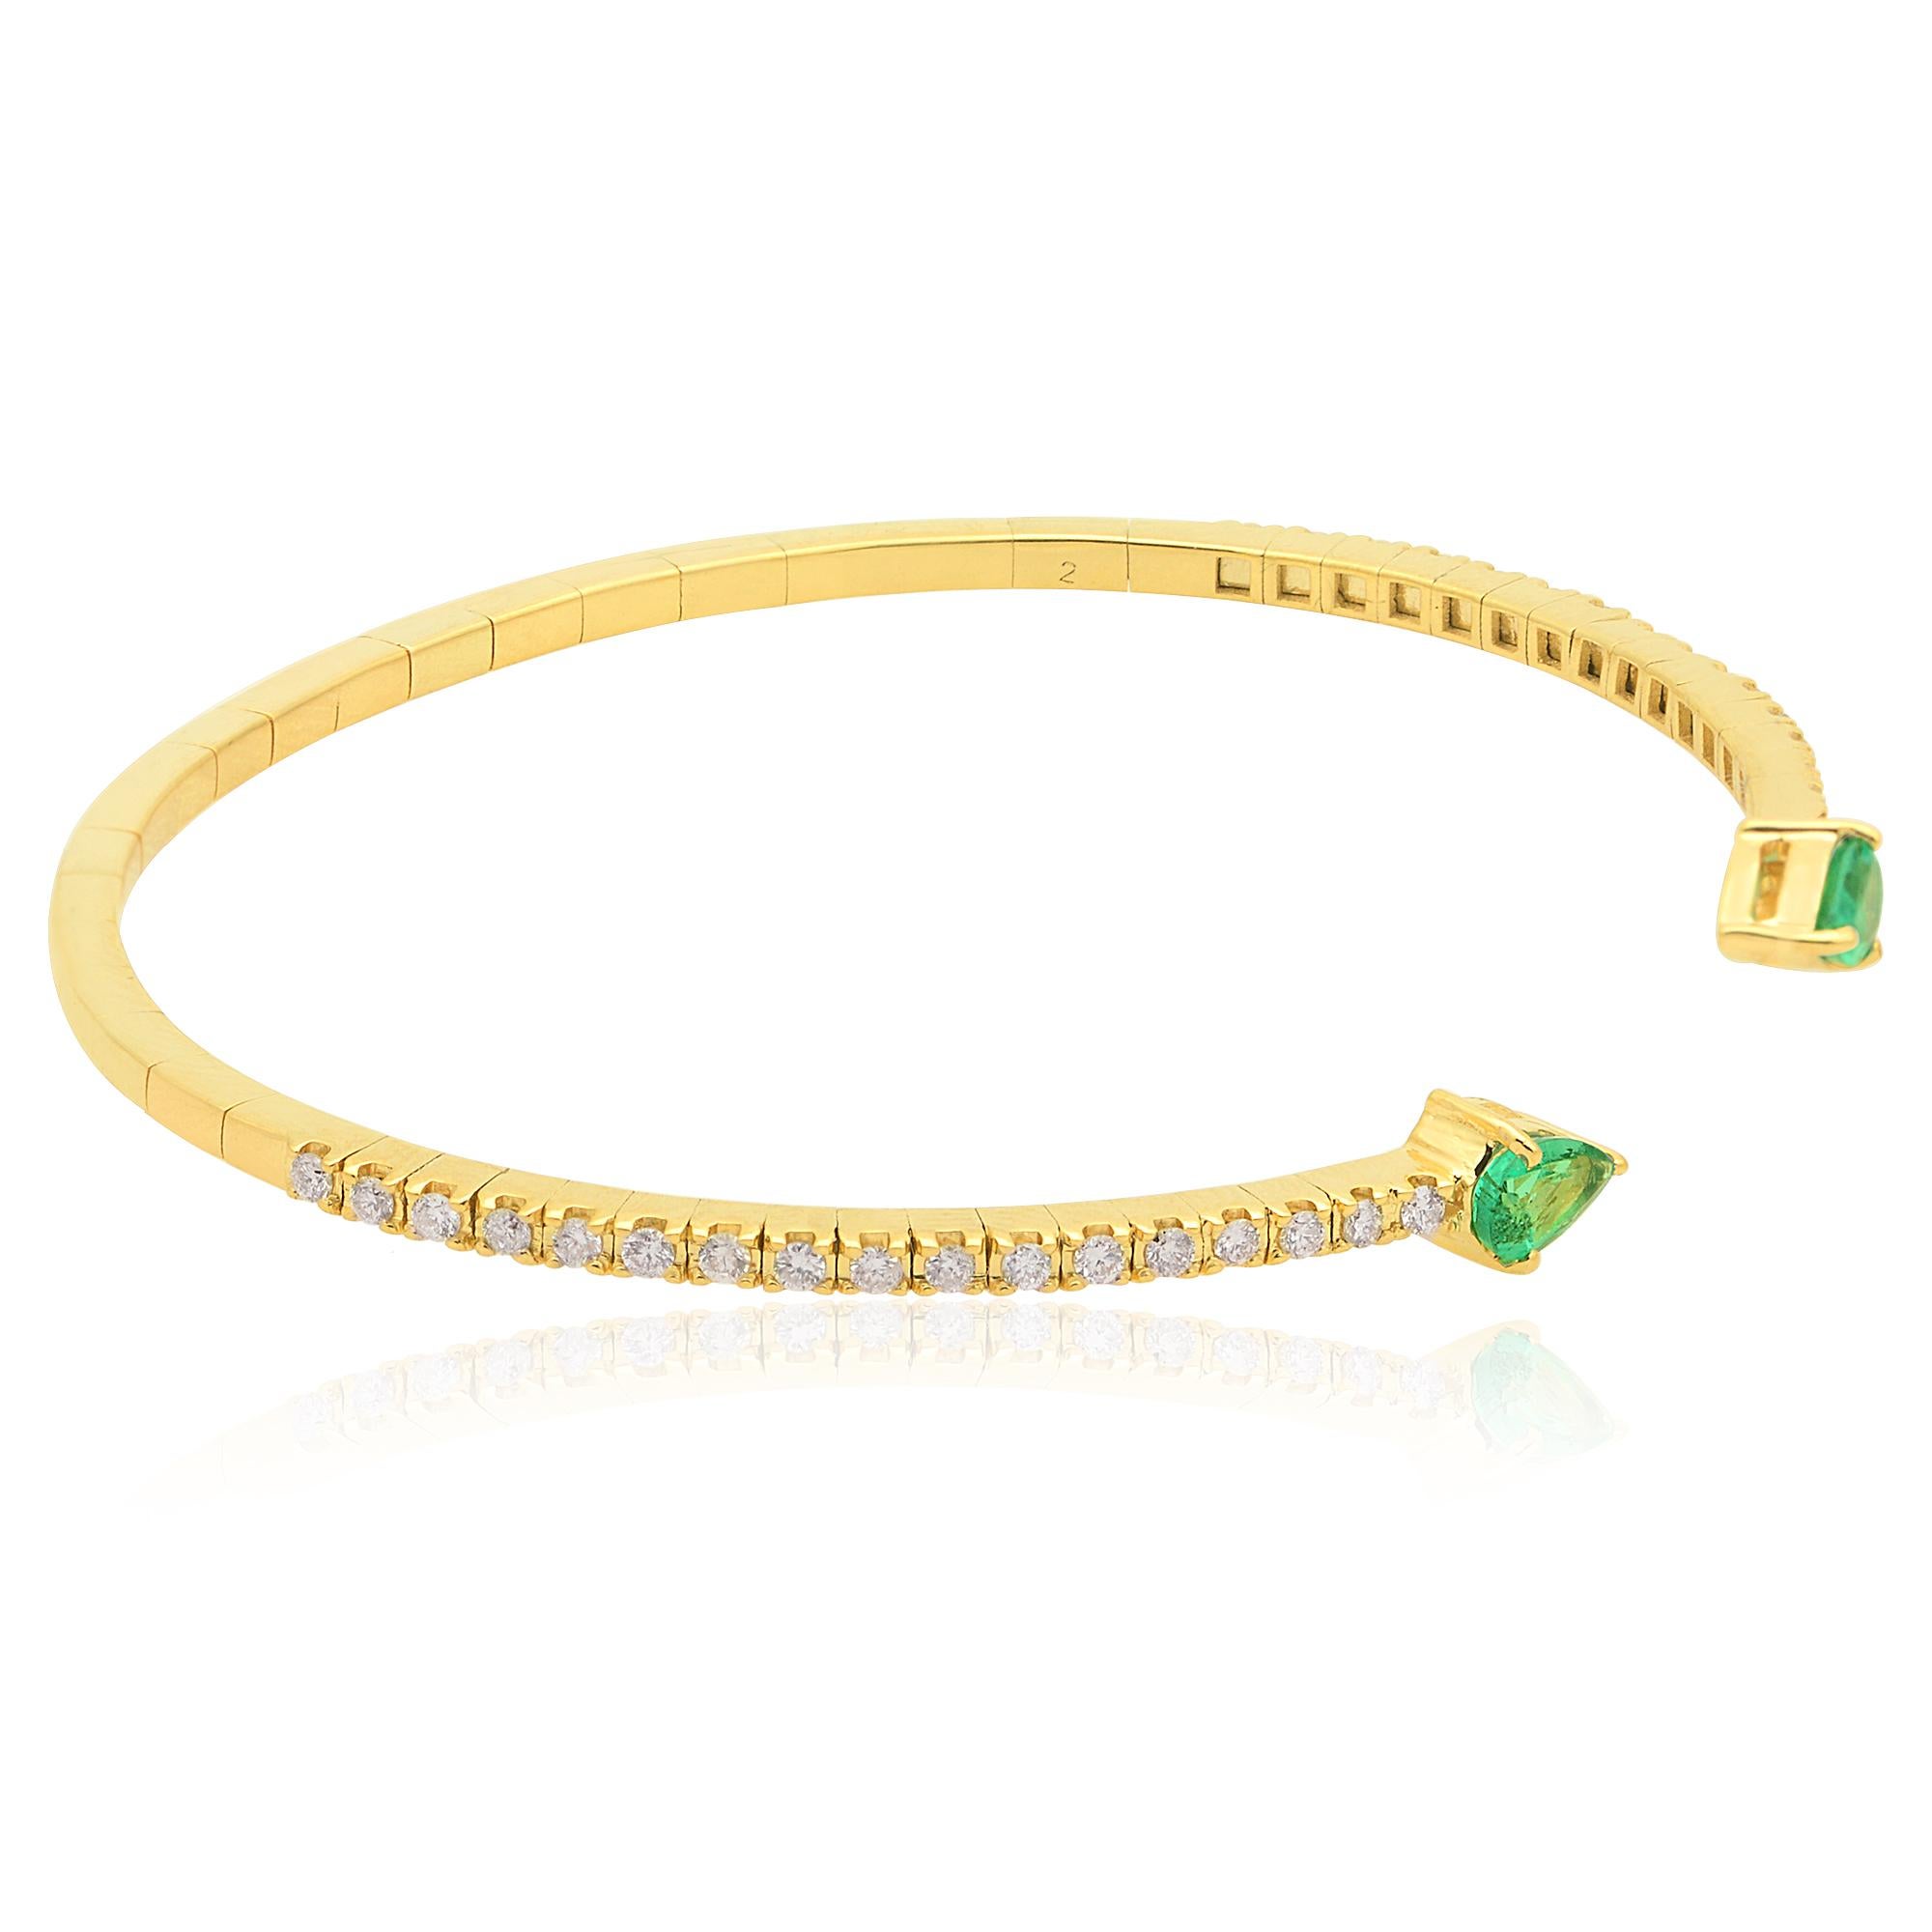 La pièce maîtresse de ce bracelet manchette est une captivante émeraude en forme de poire. L'émeraude met en valeur sa riche couleur verte, connue pour sa beauté envoûtante et symbolisant la vitalité de la nature. La forme de poire ajoute une touche